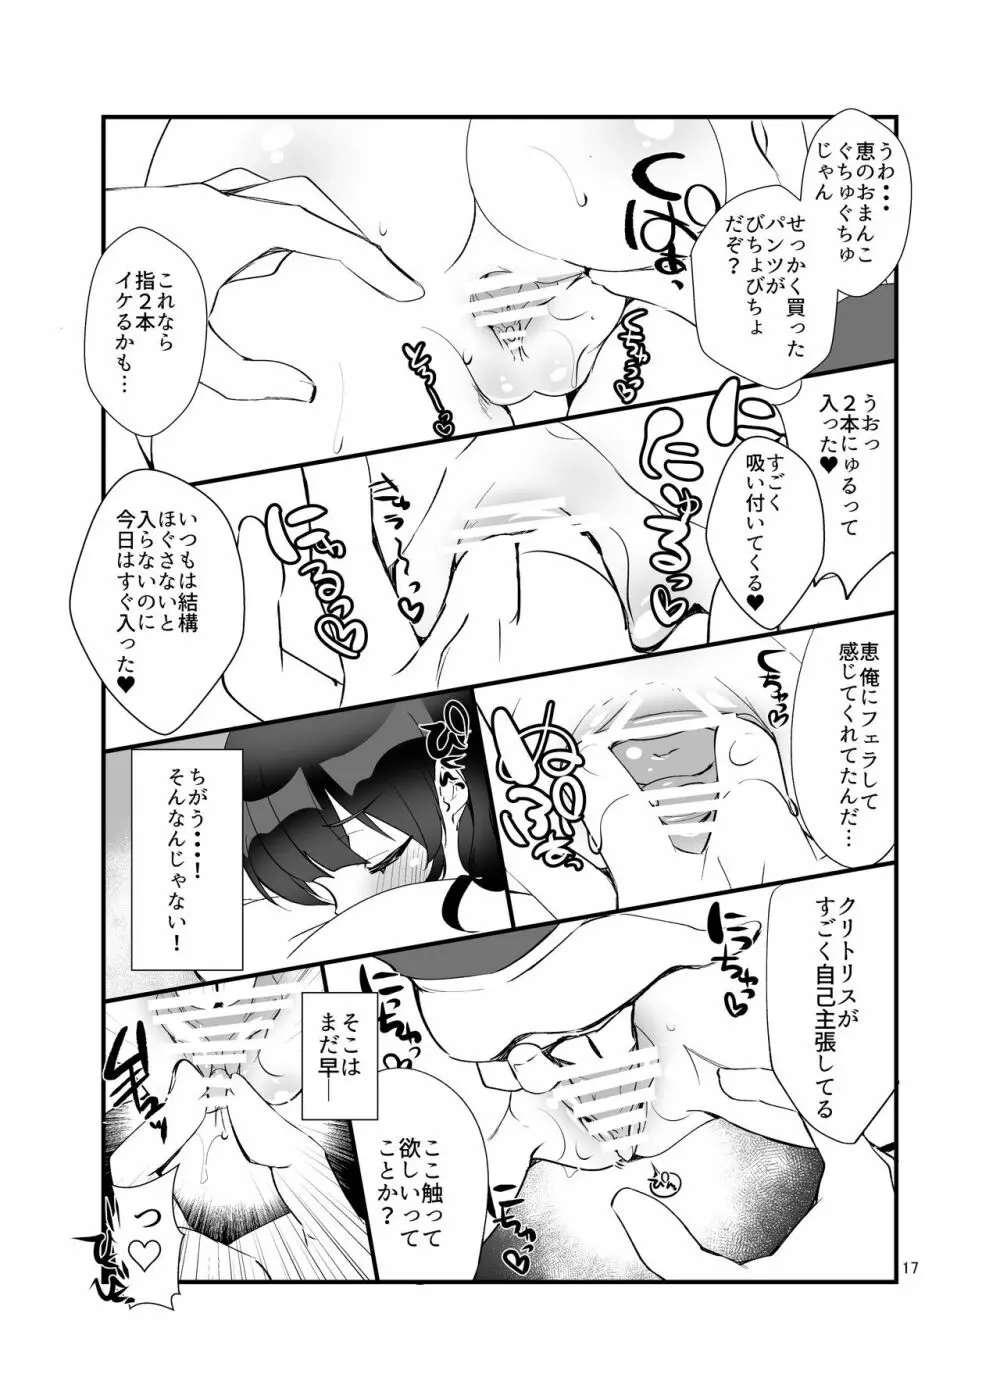 フツカノはヲタカレのメガネをとる。3 17ページ